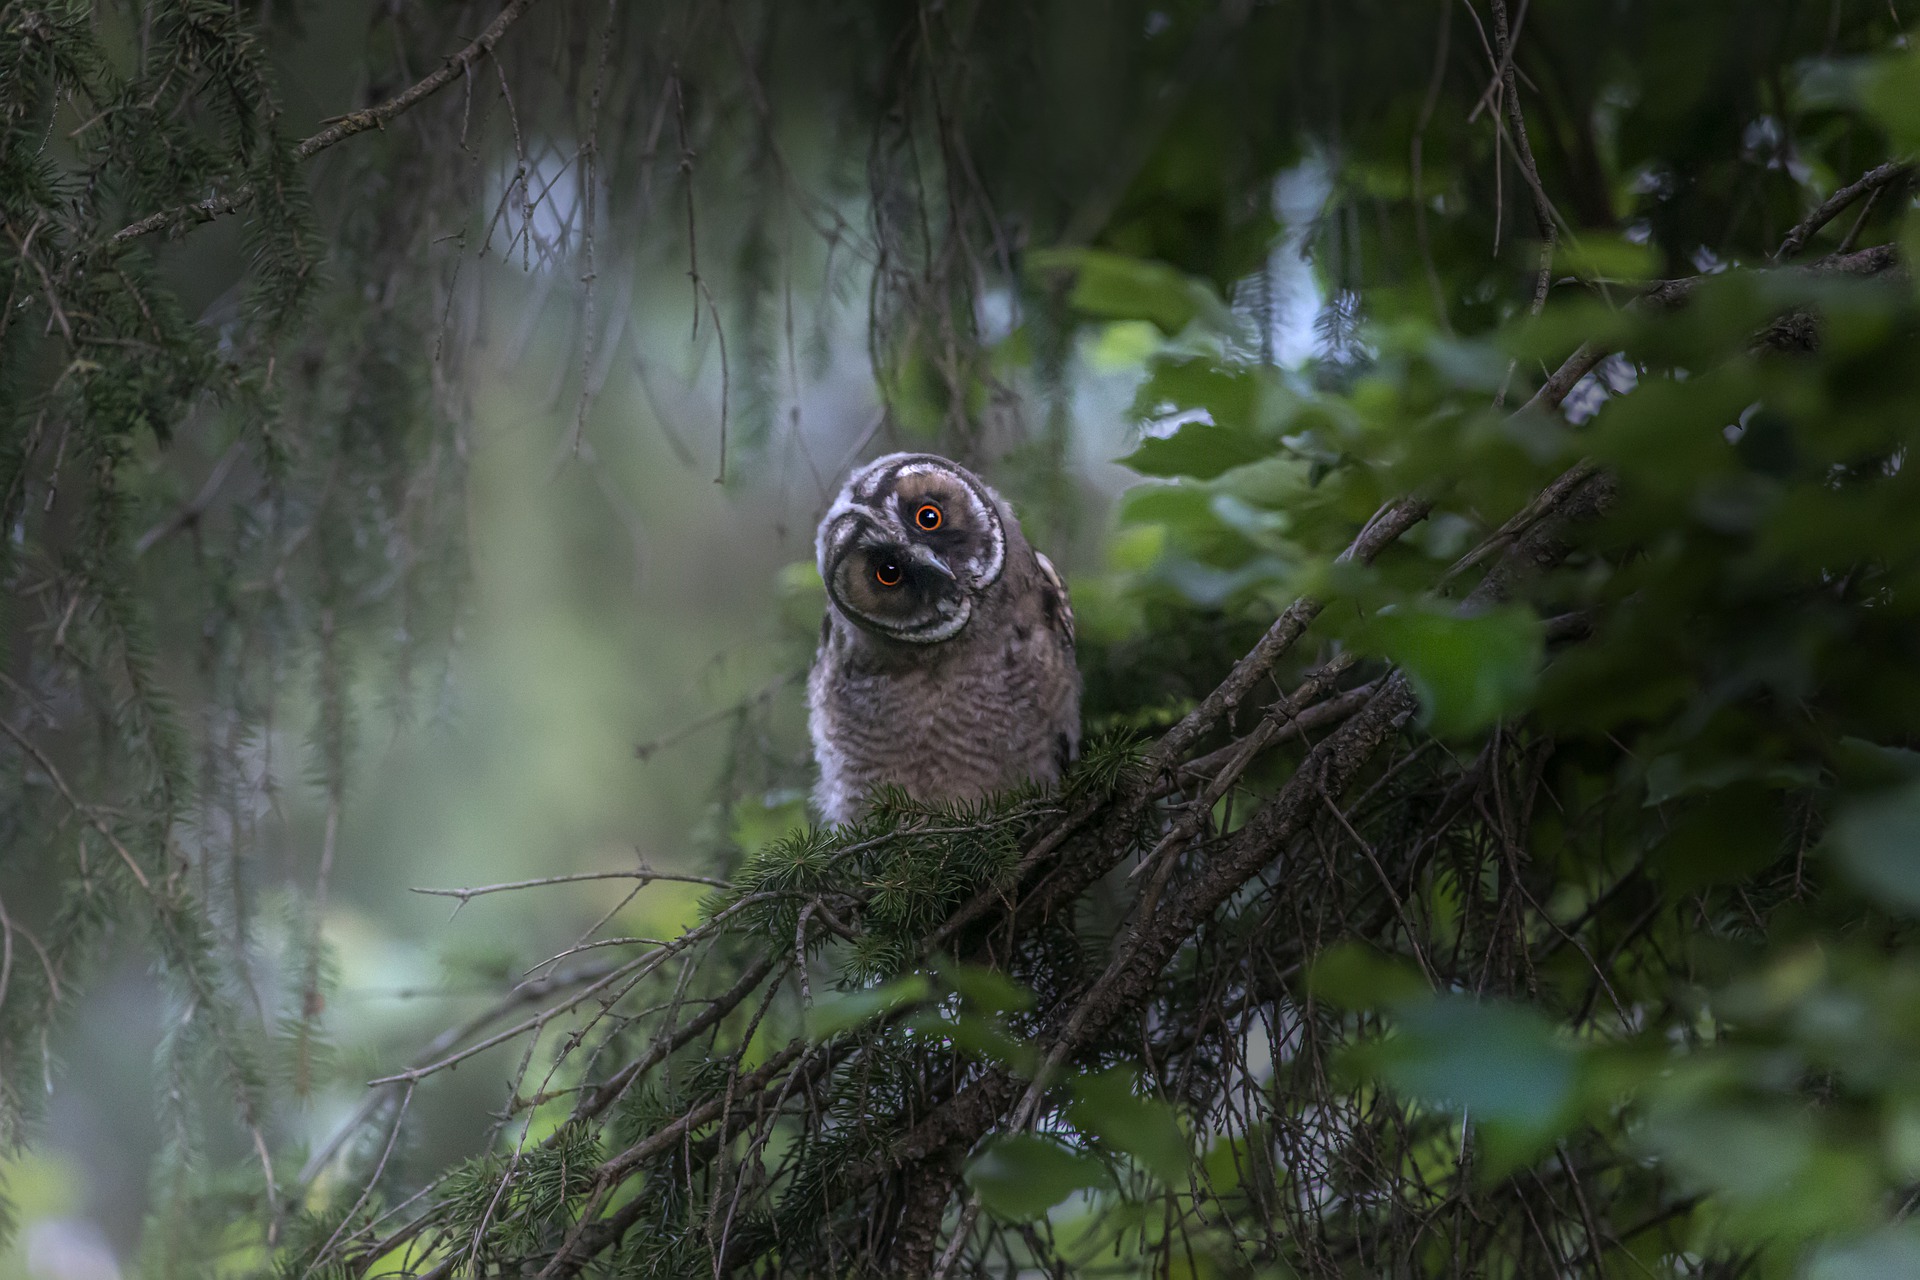 Long-eared Owl (Asio otus)